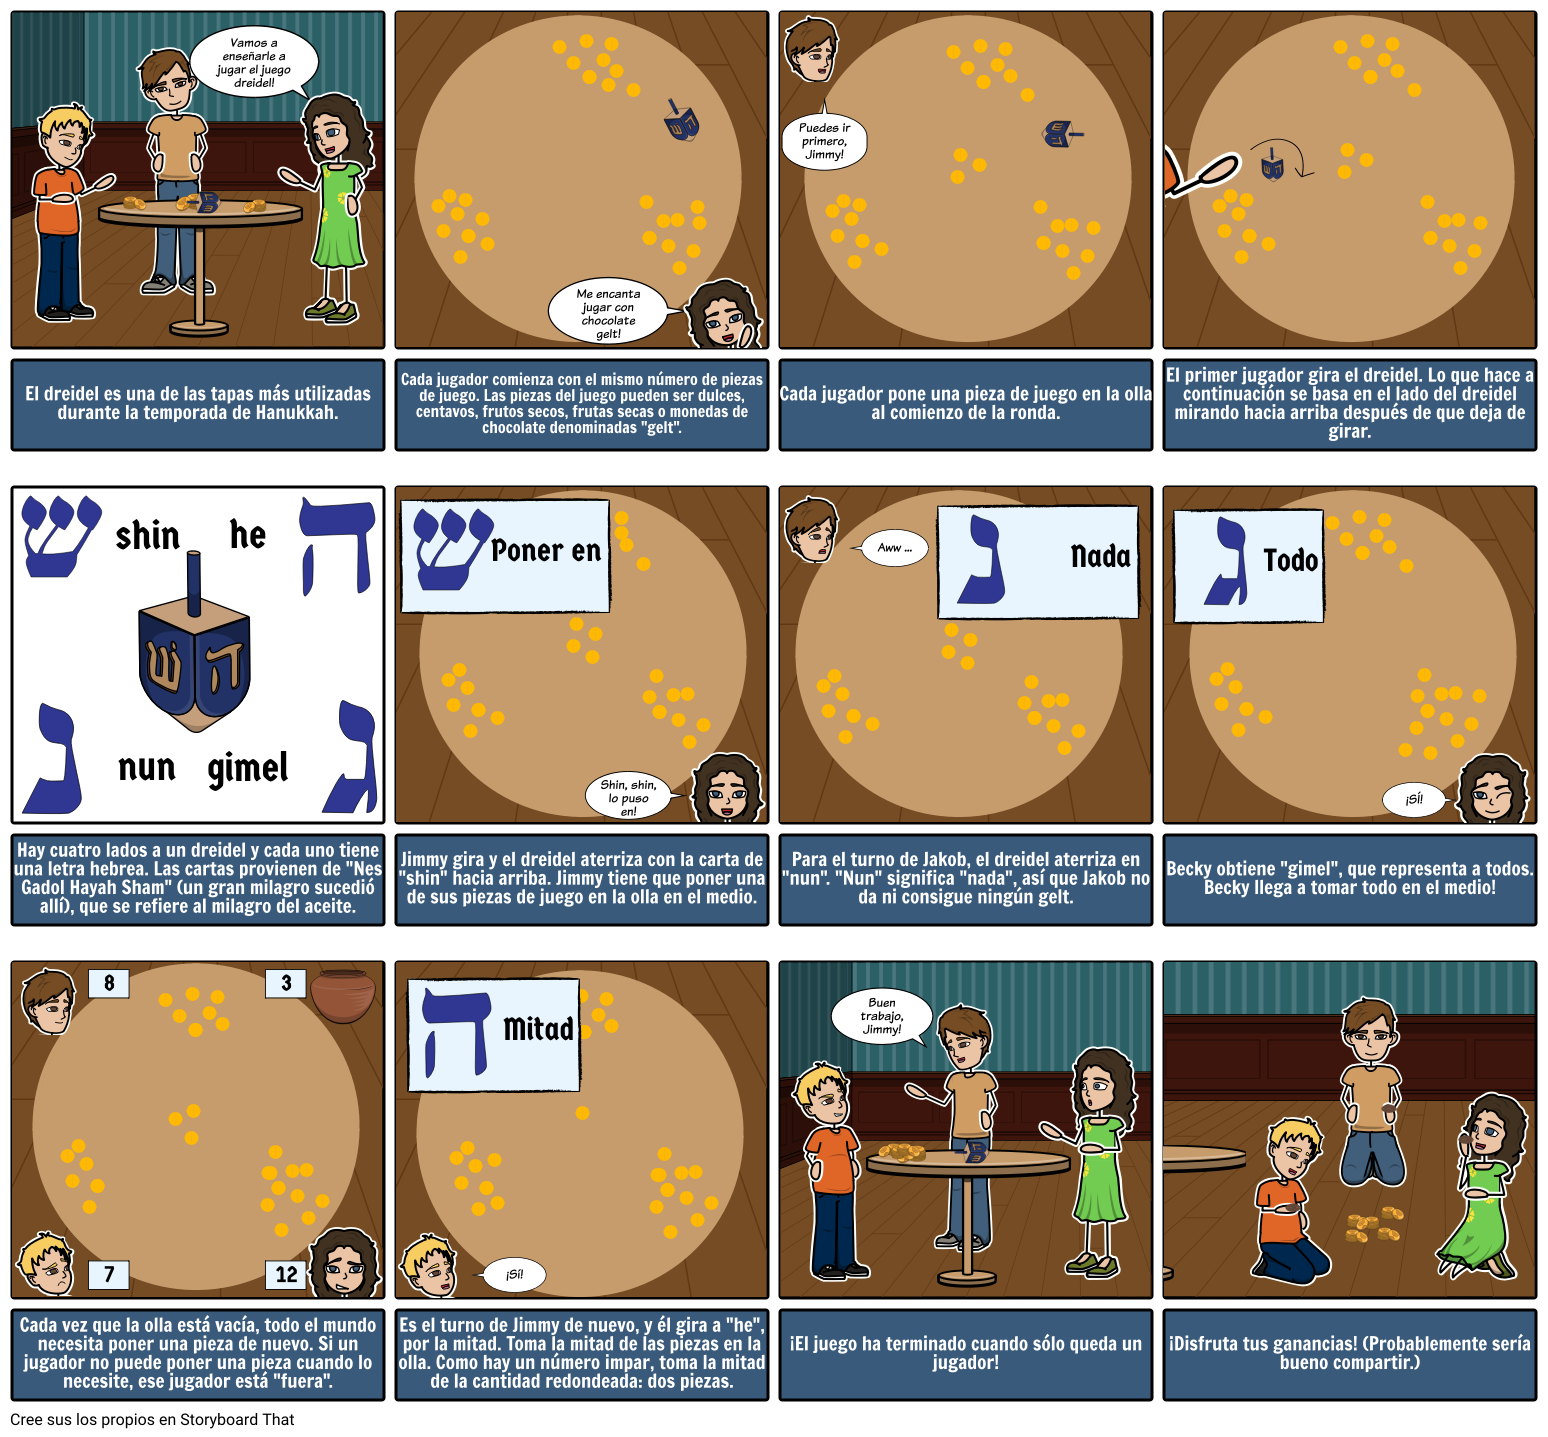 Cómo jugar al Dreidel: 6 Pasos (con imágenes) - wikiHow